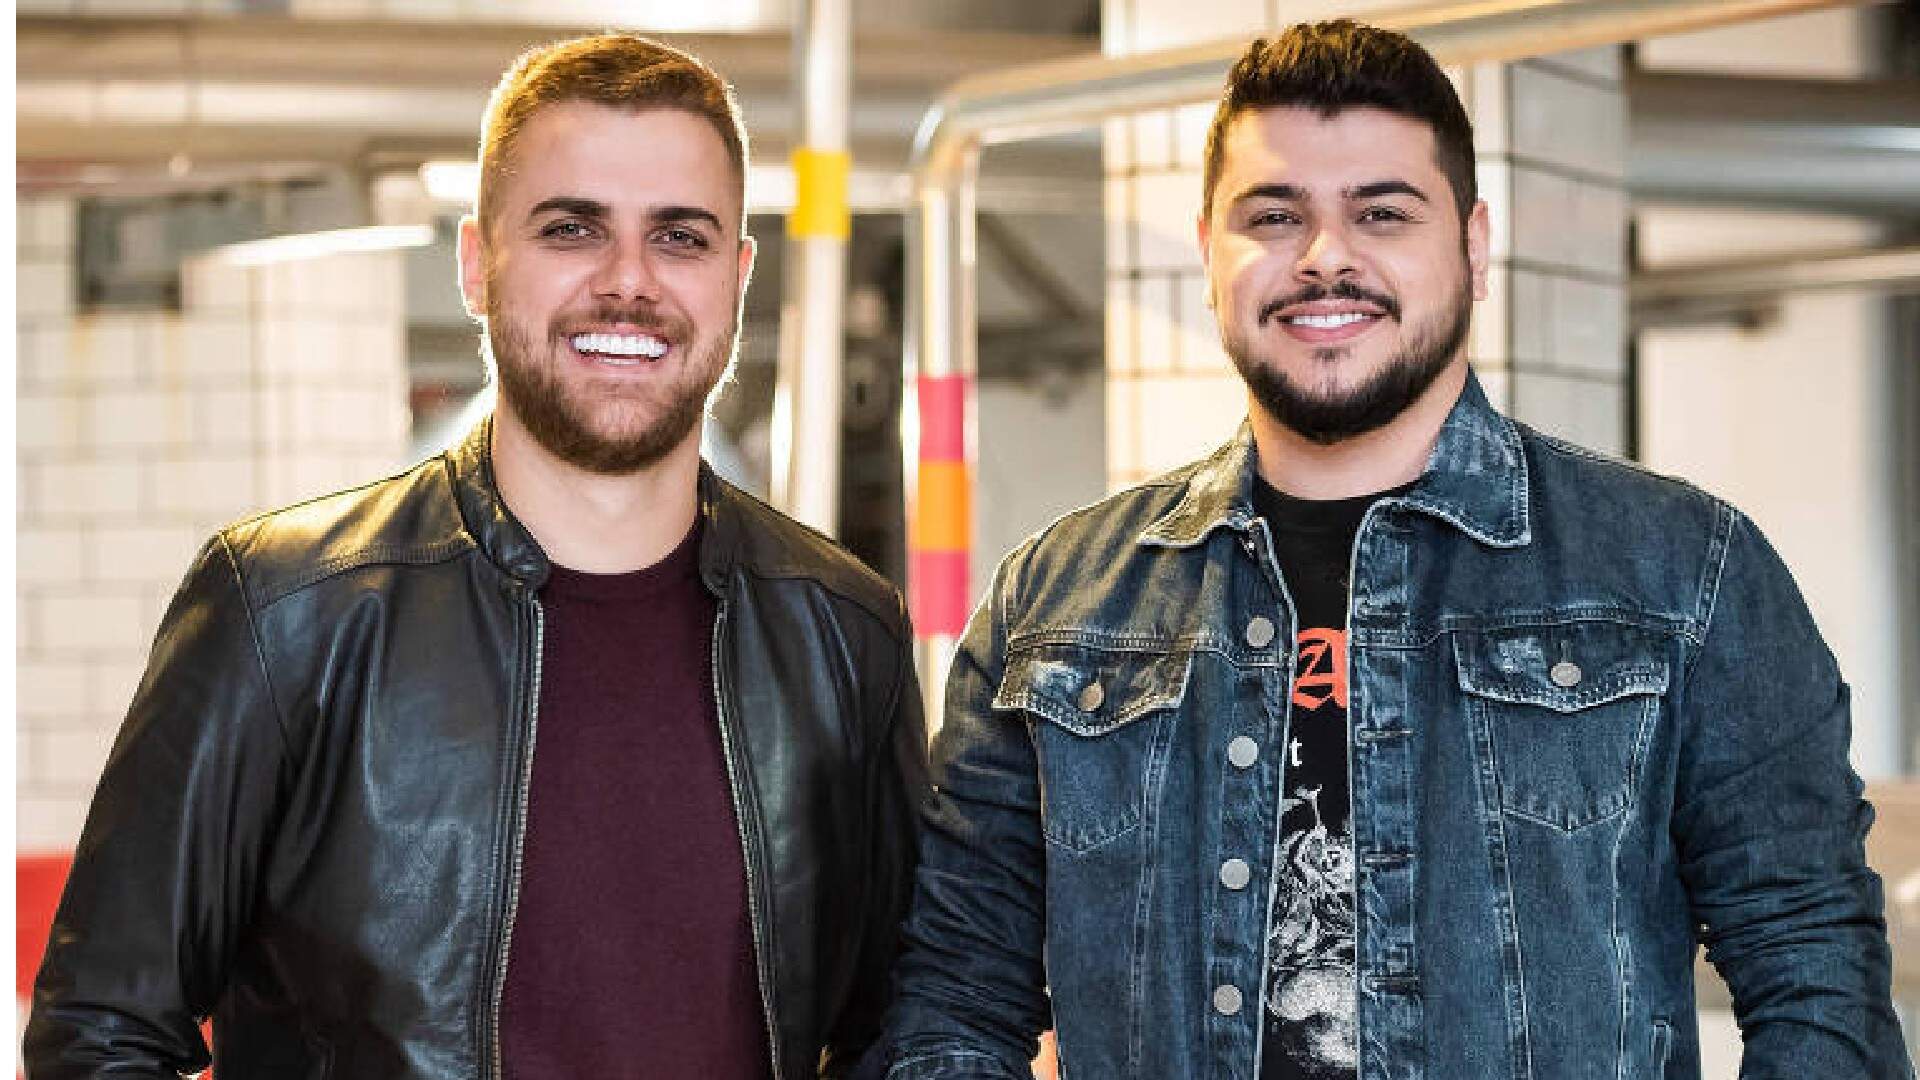 Zé Neto e Cristiano tomam atitude durante show e surpreendem público: “Impossível explicar” - Metropolitana FM